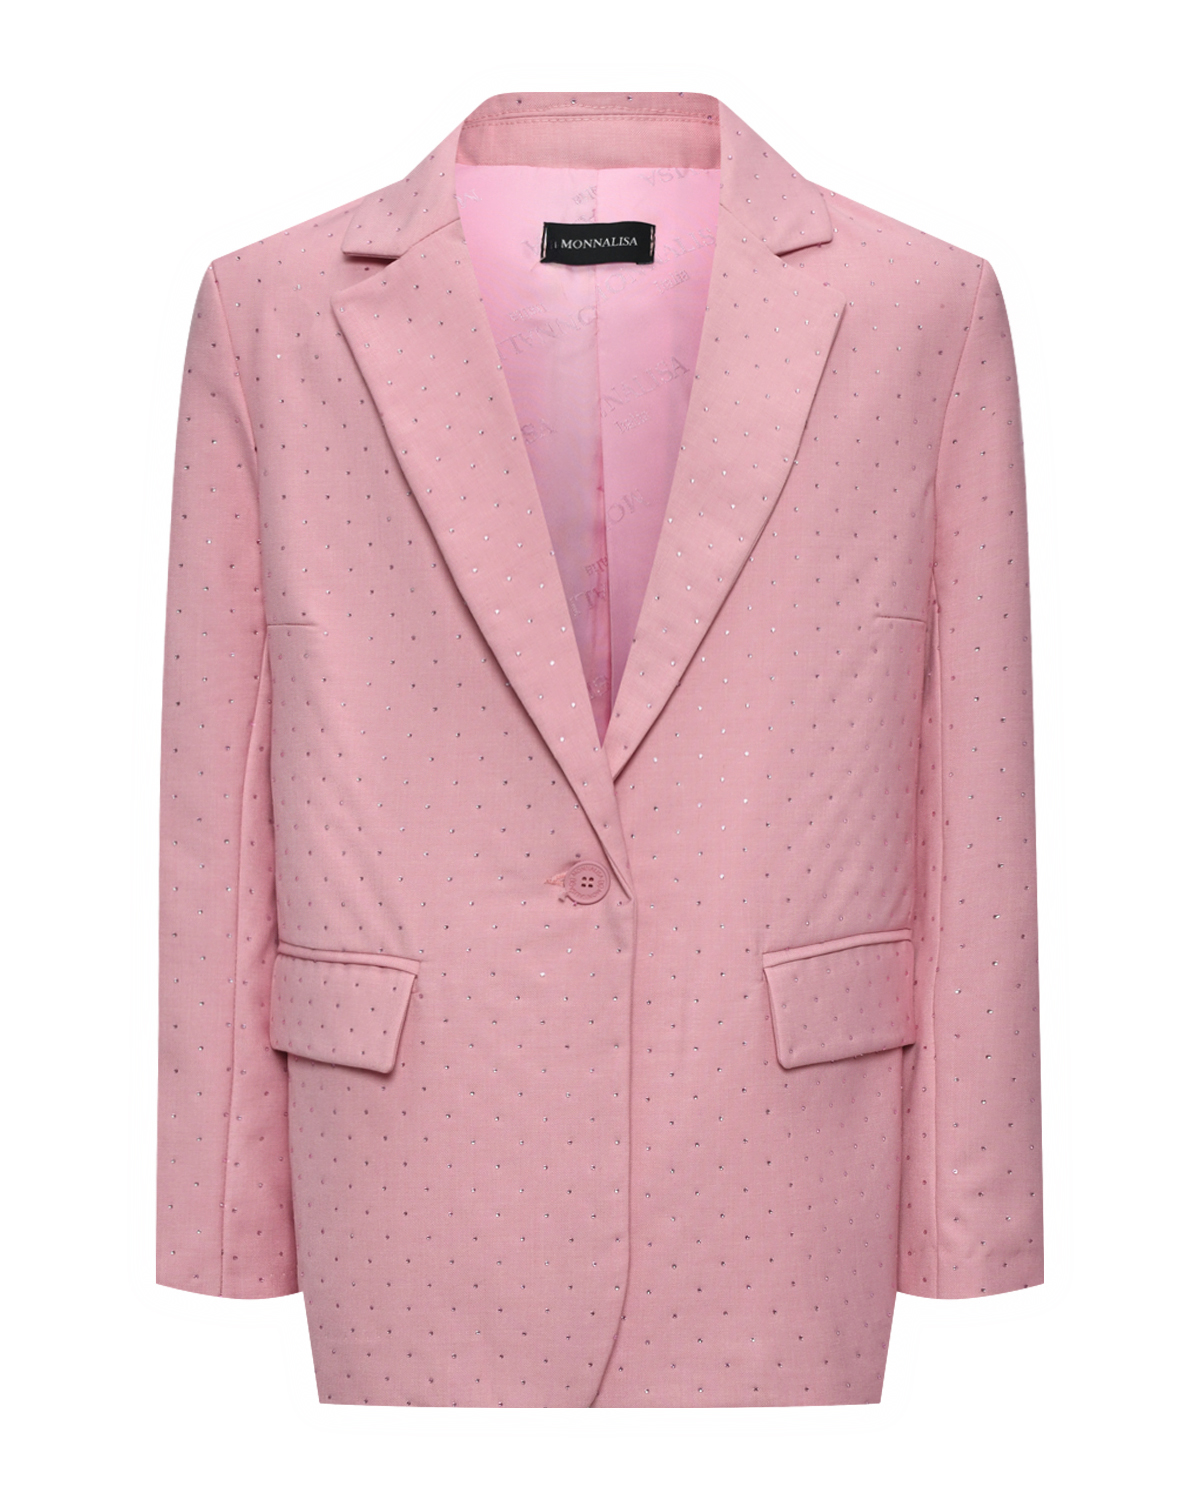 Пиджак однобортный розовый со стразами Monnalisa